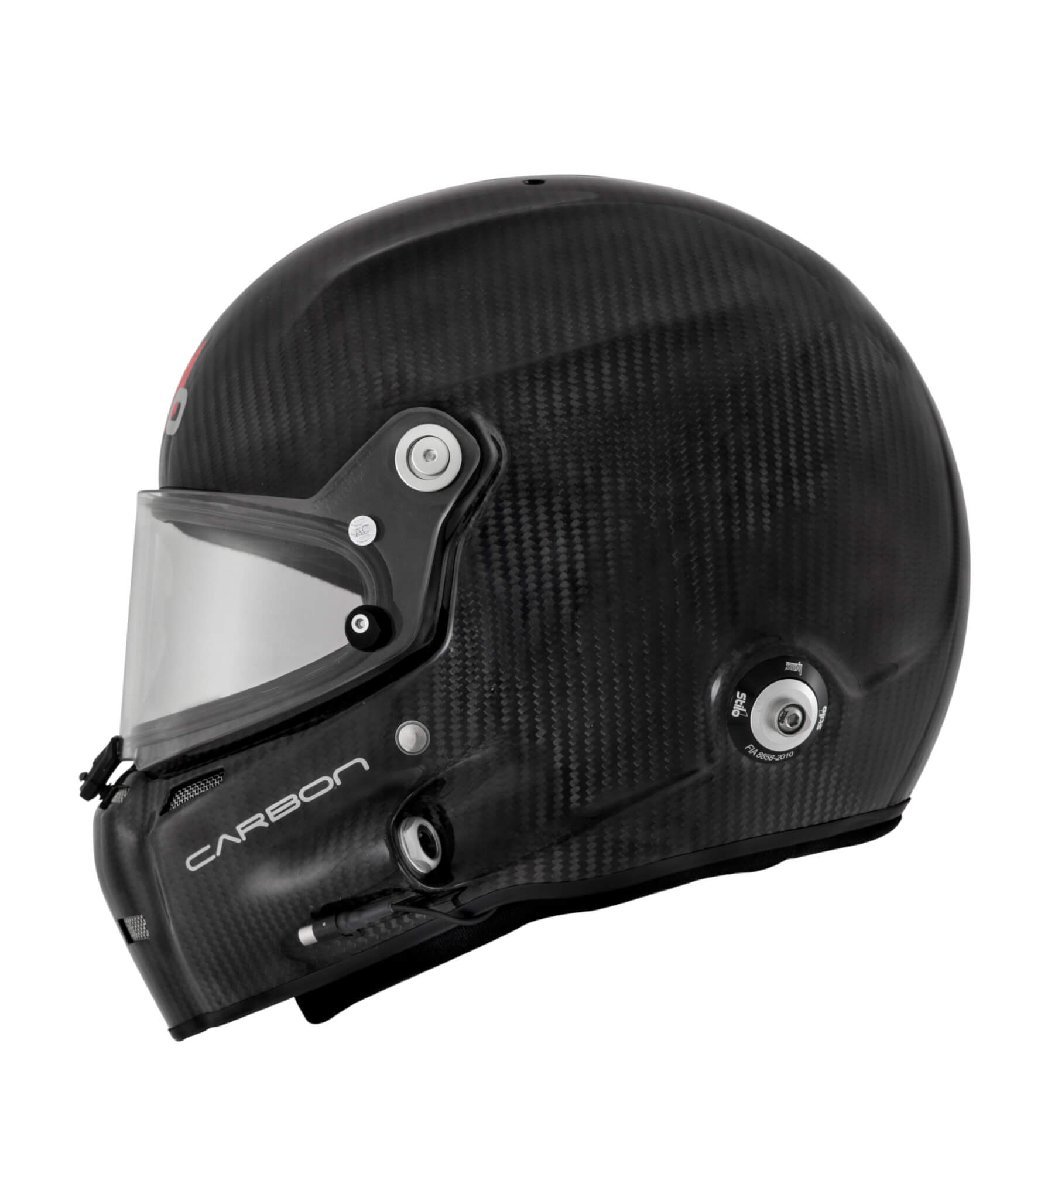 [Stilo] helmet STILO ST5F CARBON HELMET FIA 8859-2015 SNELL SA2020 size :L(60) [AA0700CG1T]